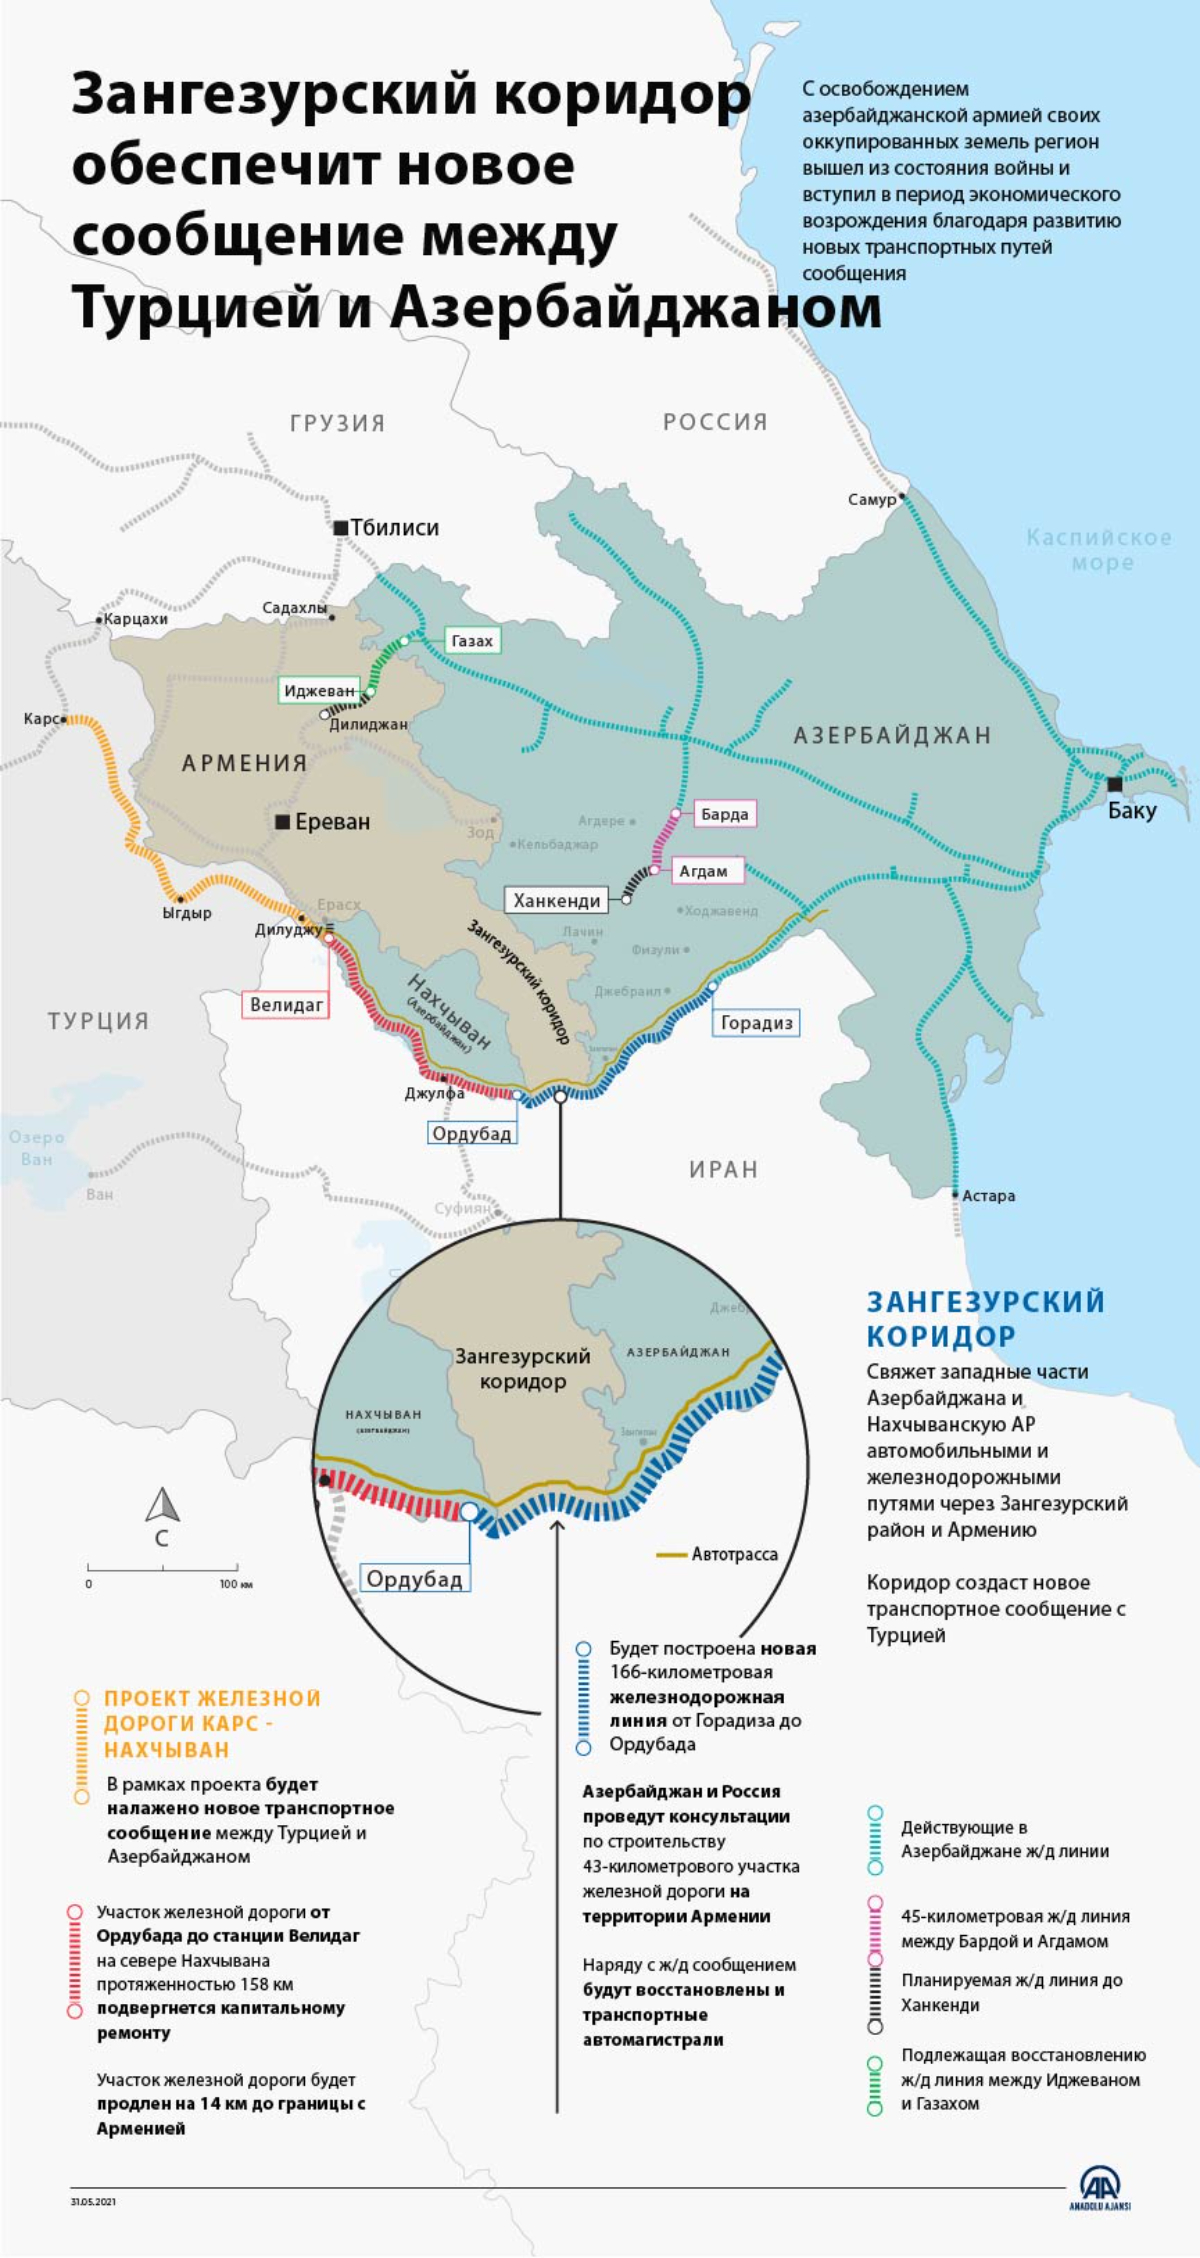 Зангезурский коридор обеспечит новое сообщение между Турцией и Азербайджаном